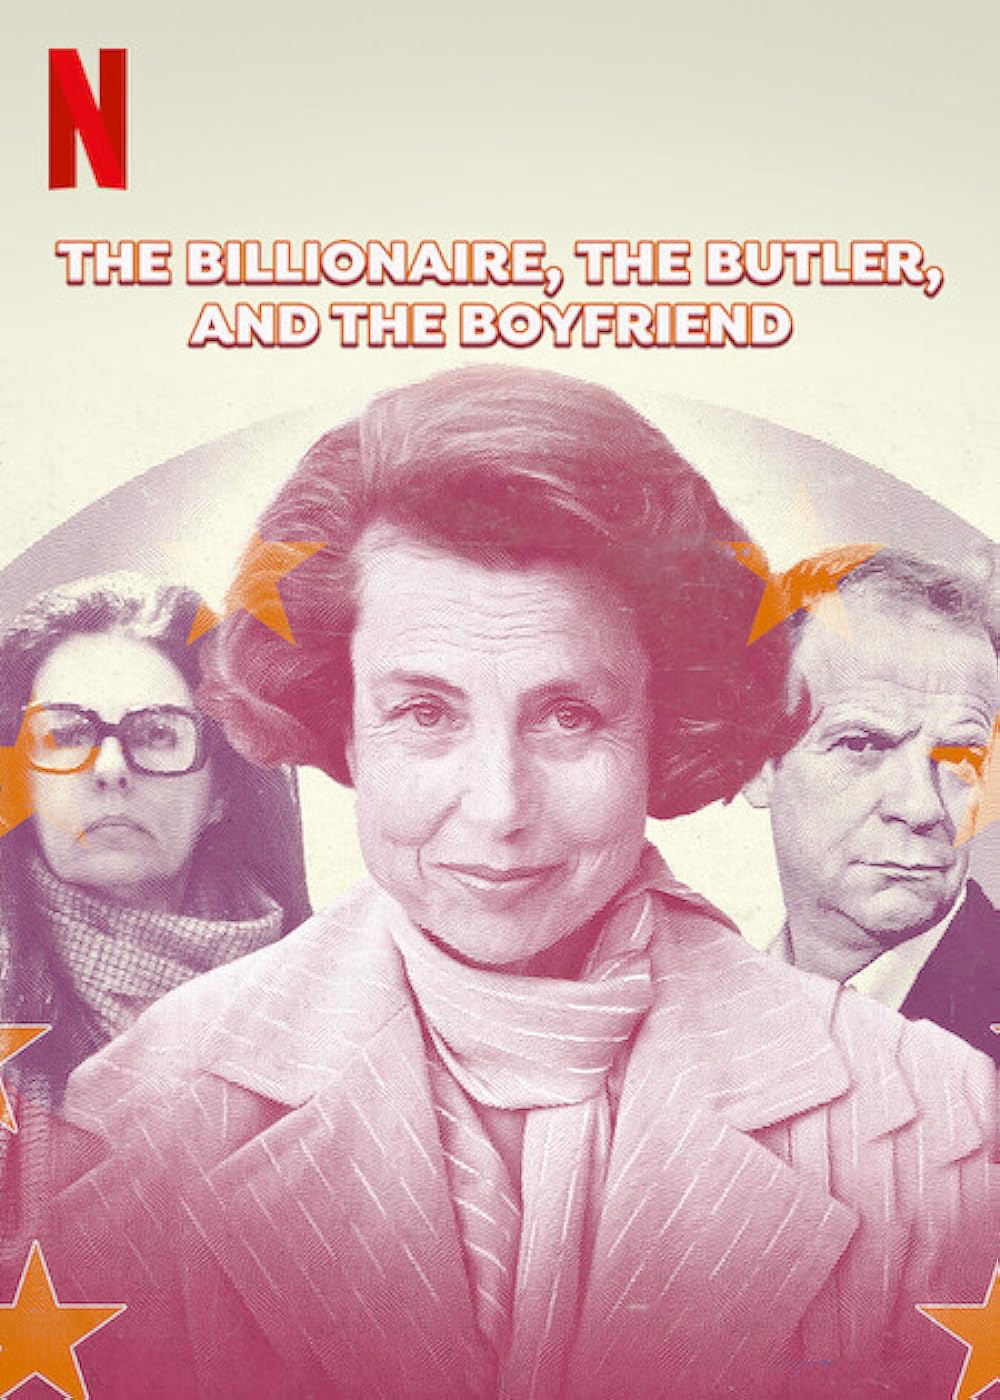 Xem Phim Bê bối Bettencourt: Nữ tỷ phú, người quản gia và bạn trai (The Billionaire, The Butler, and the Boyfriend)